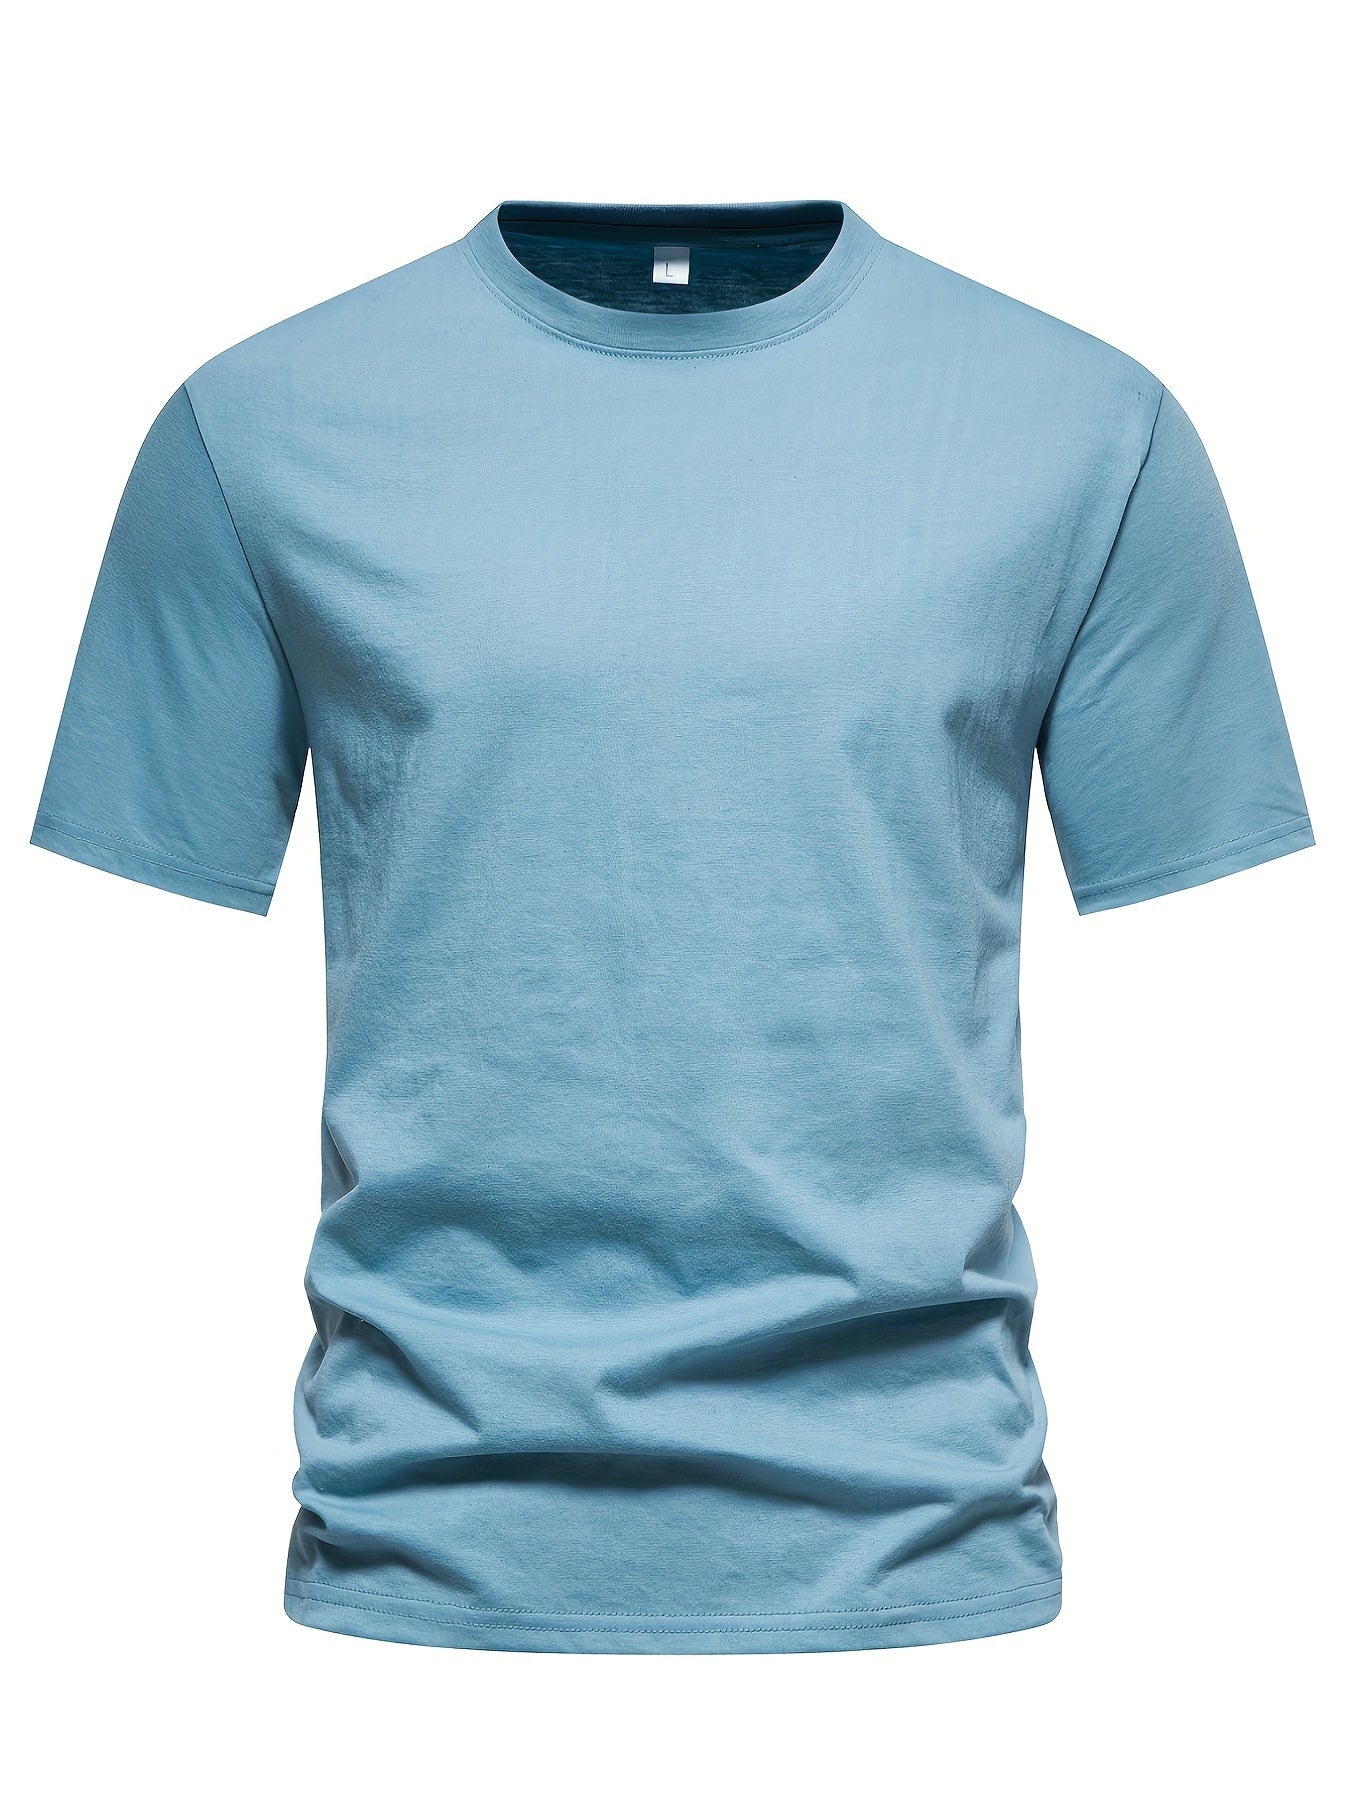 Men's Casual Summer Cotton T-shirt